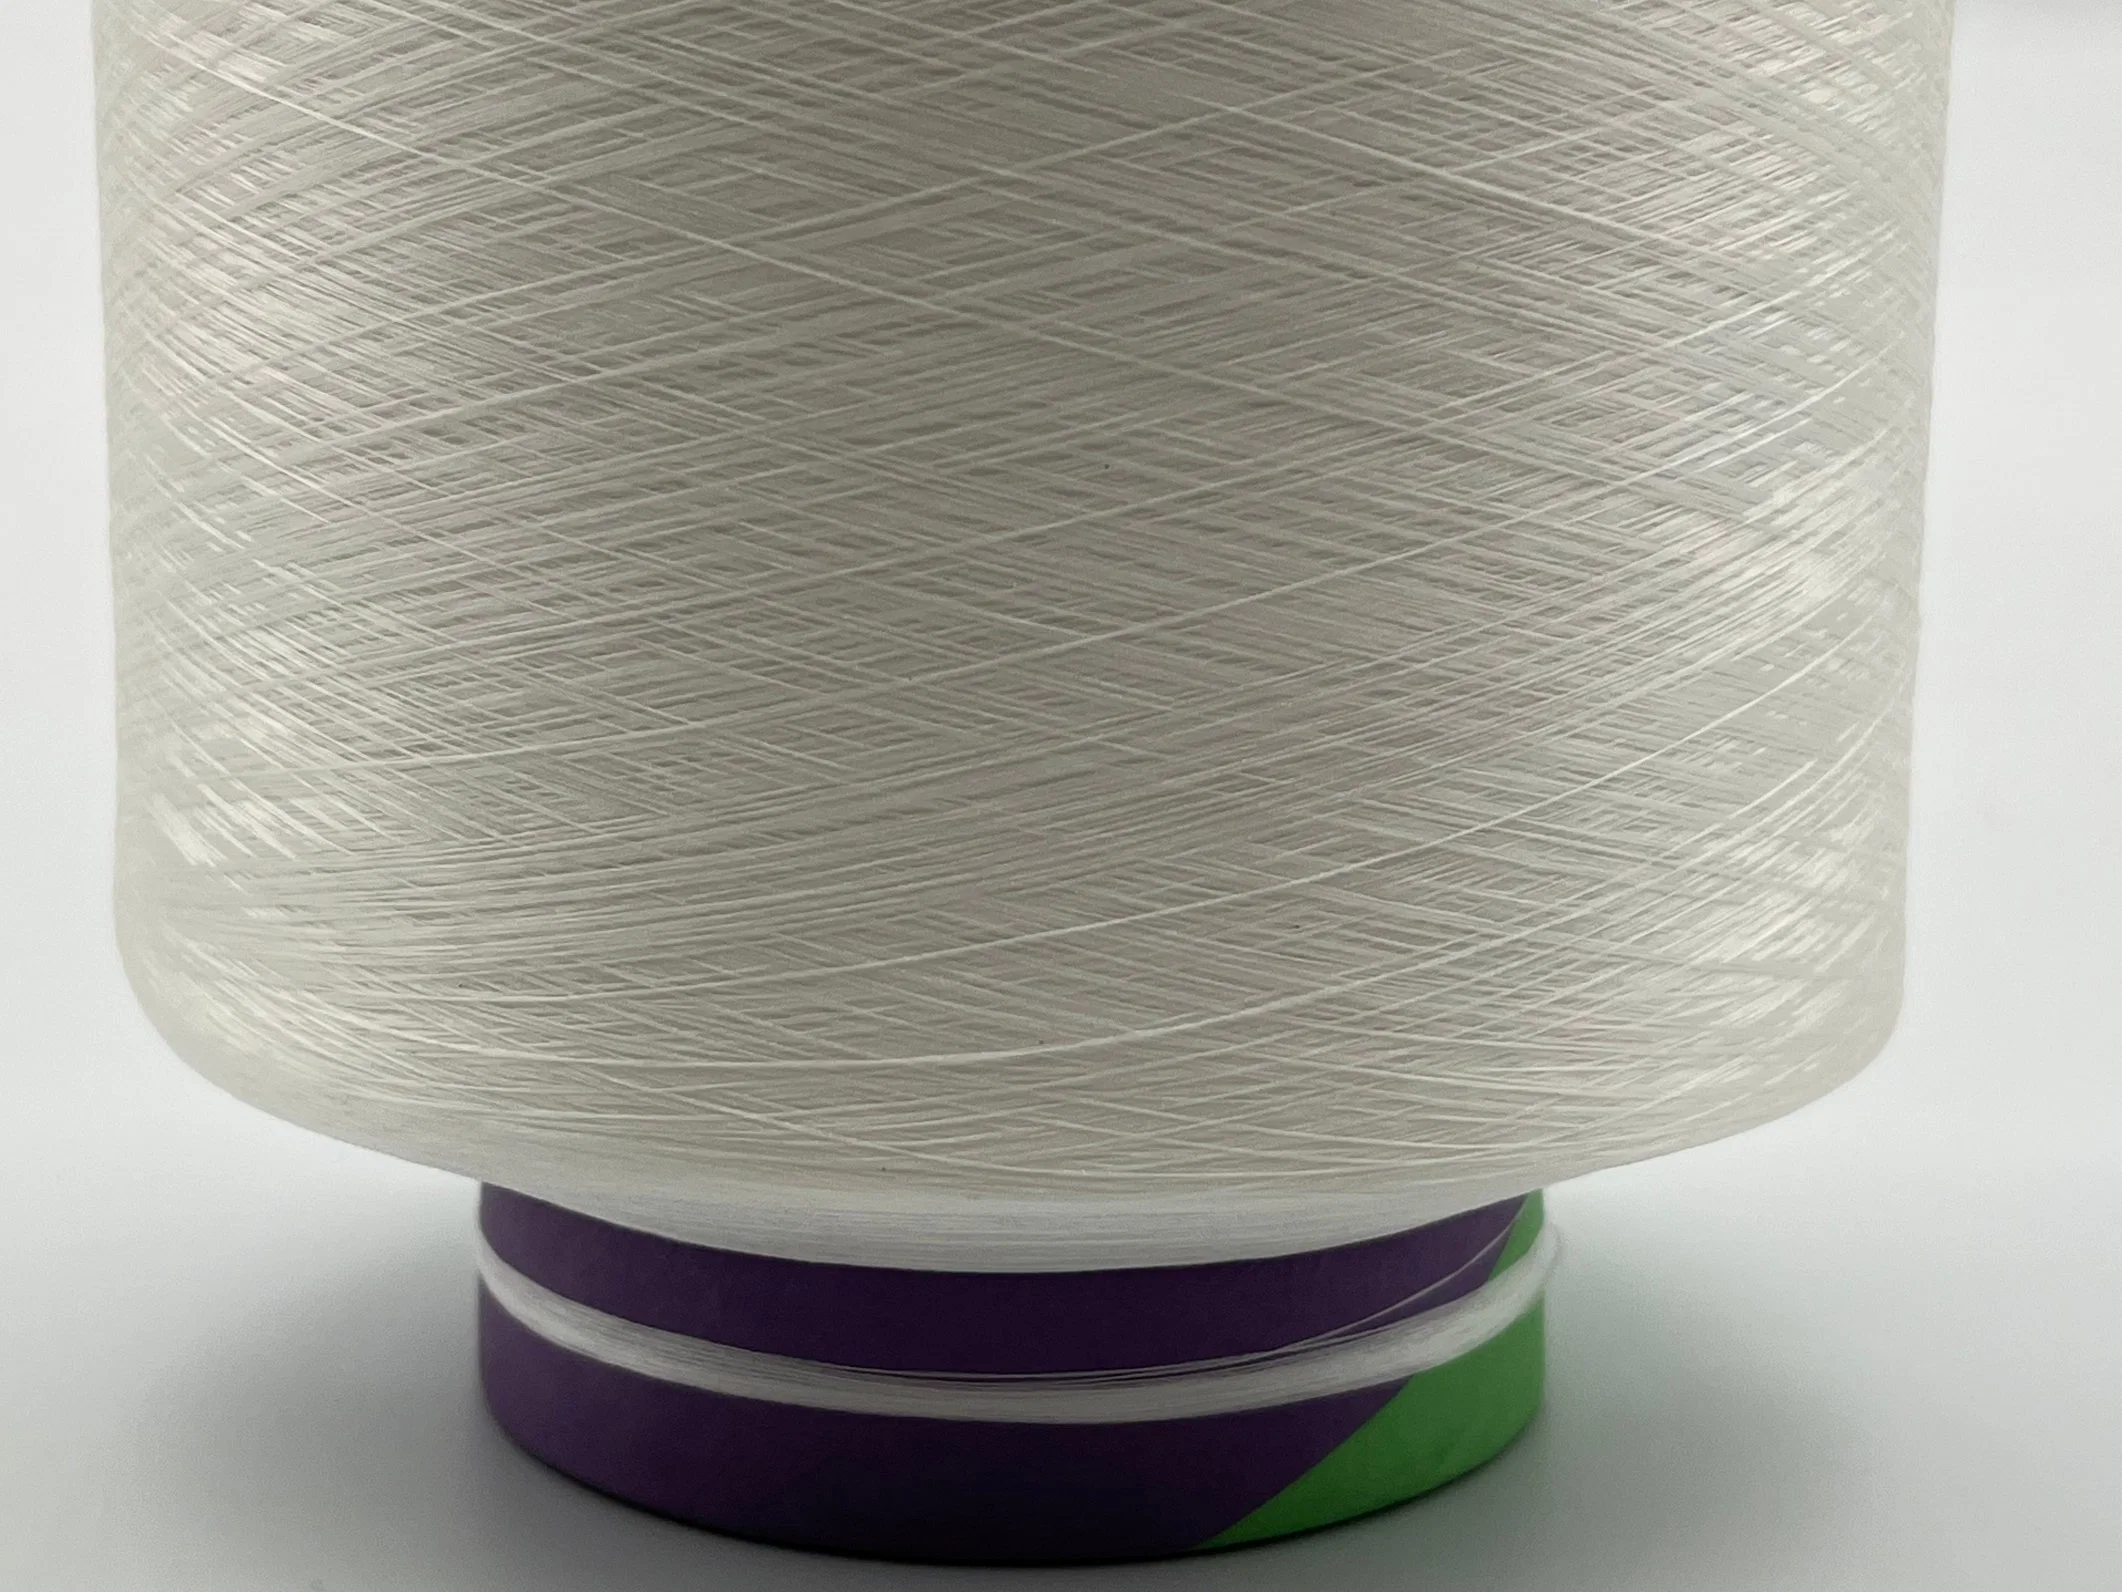 Excelente alta elasticidade dos fios de PBT DTY 40D/24F Produtos têxteis matérias-primas aos fios de poliéster para tricotar e tecelagem Maillot